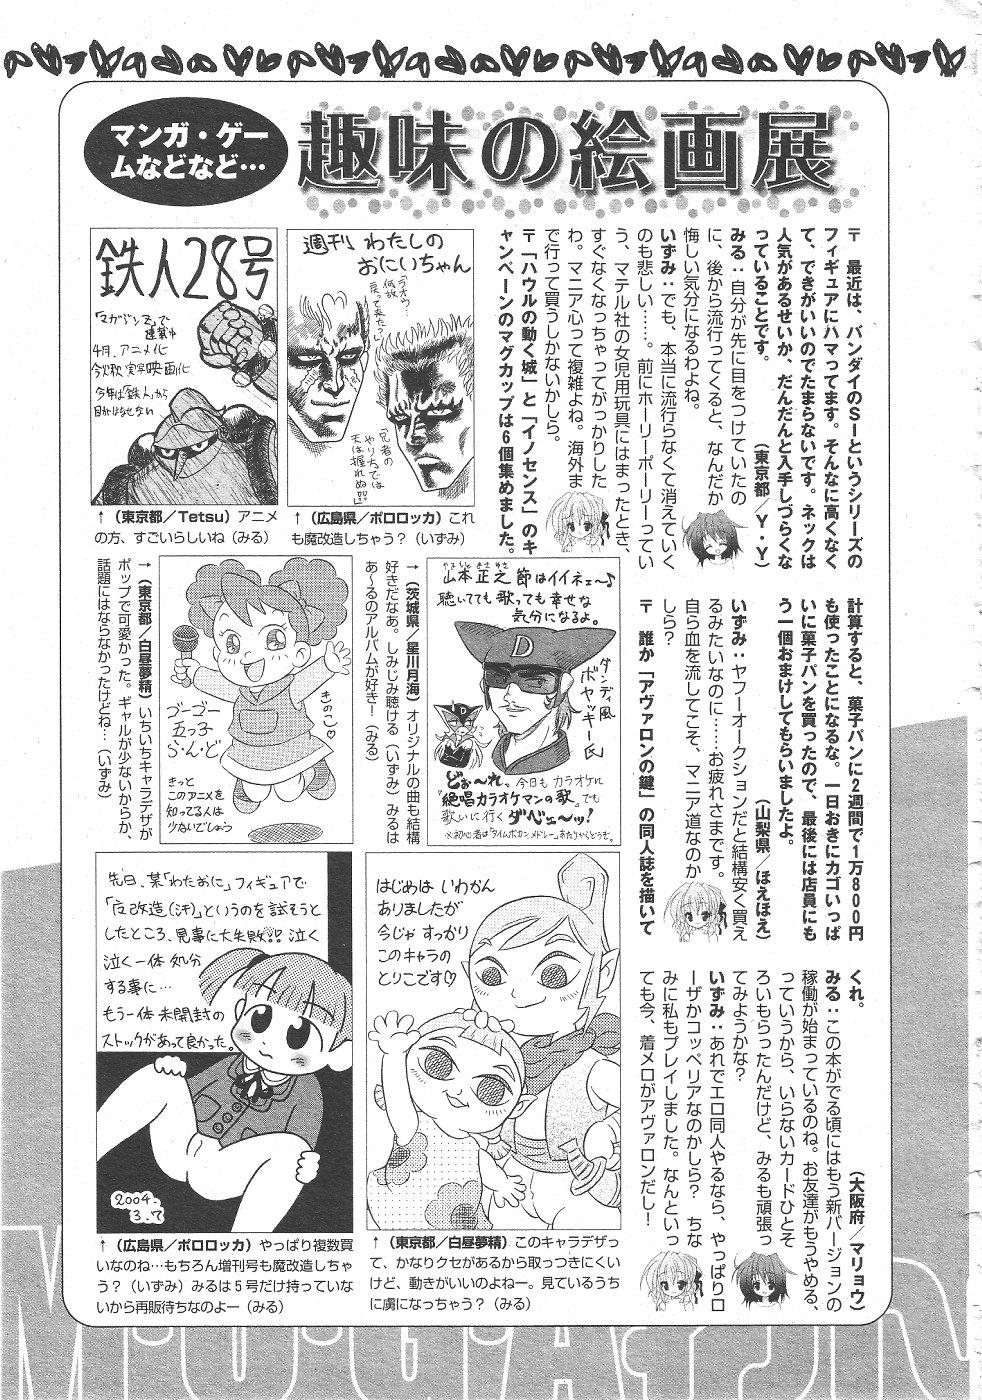 Gekkan Comic Muga 2004-06 Vol.10 416